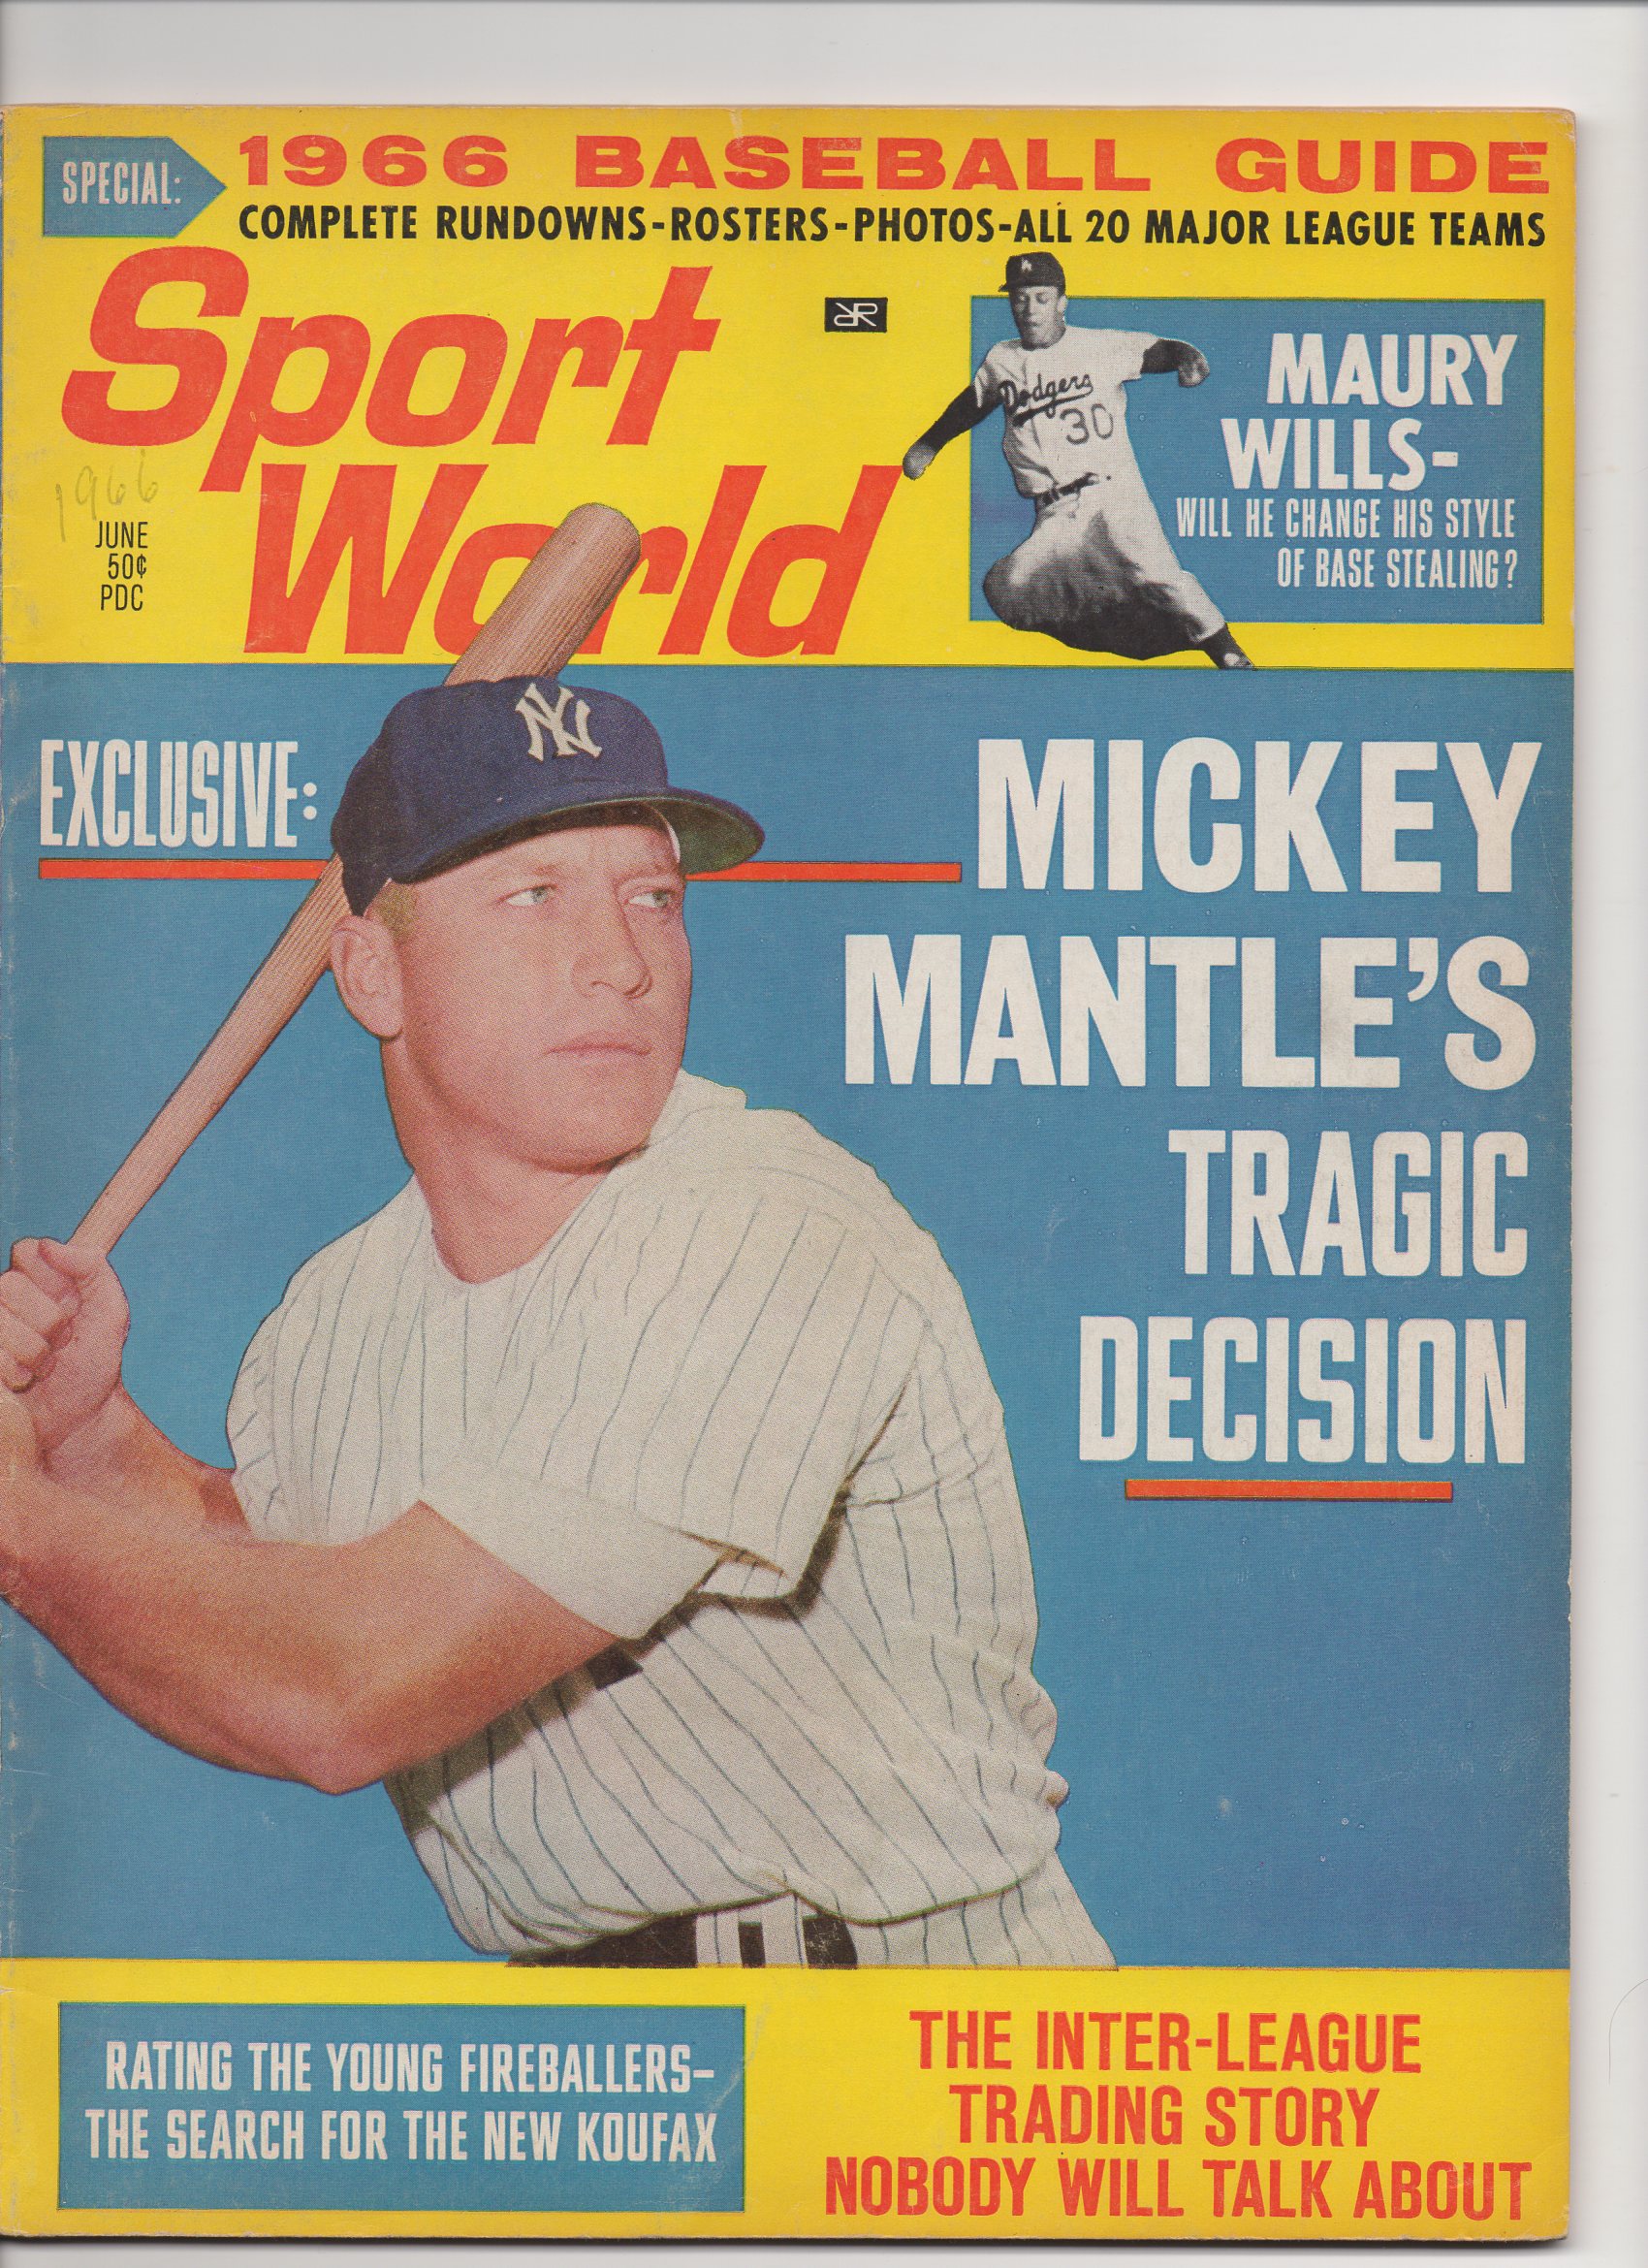 1966 sport world baseball guide, june